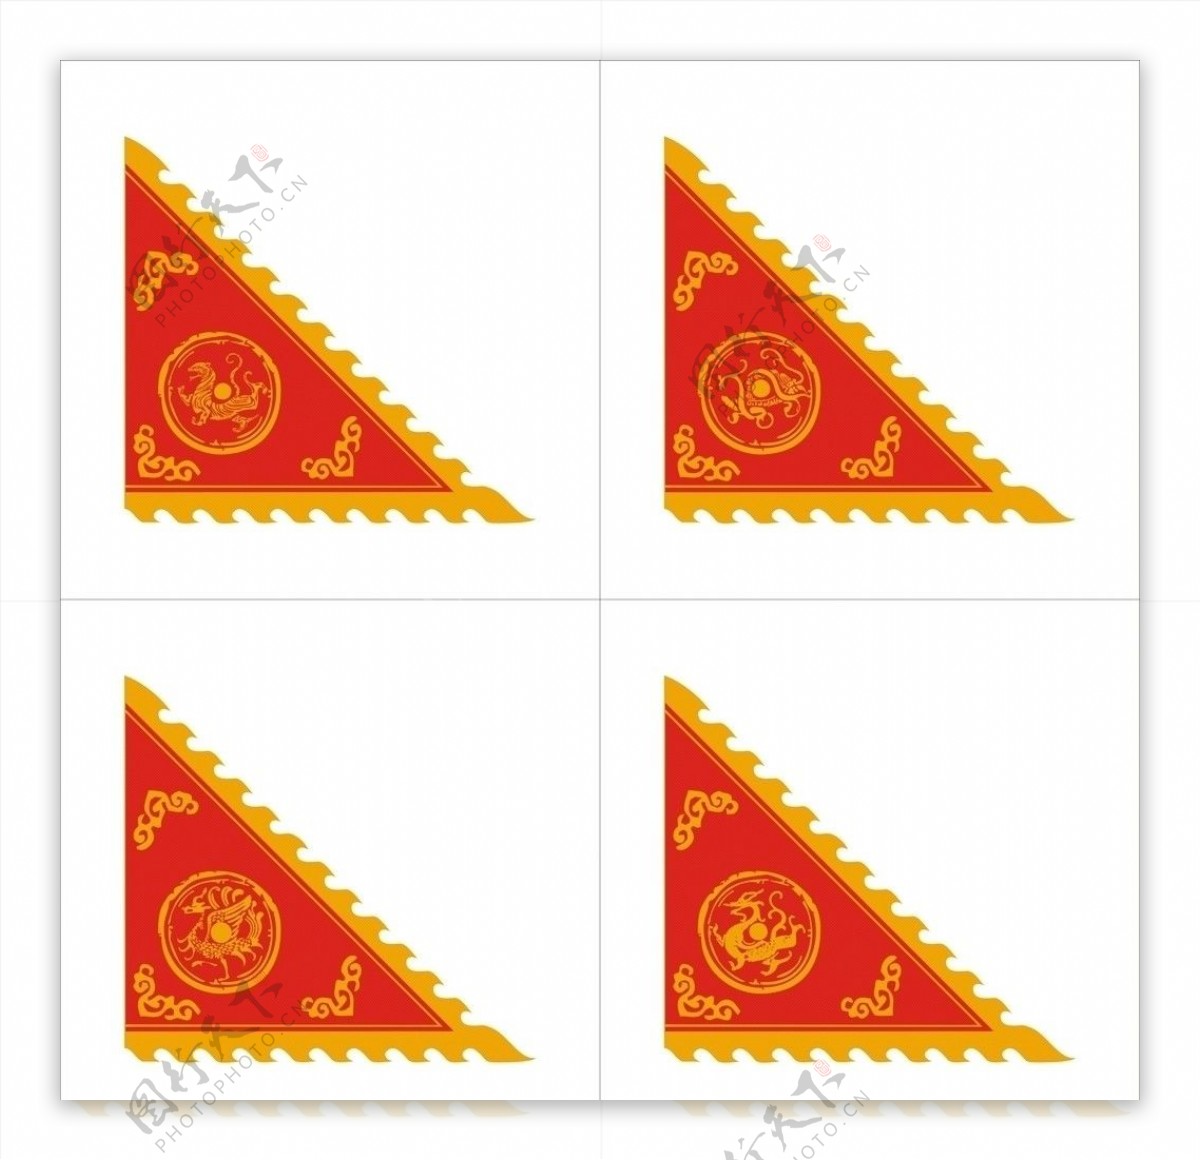 四神兽旗子图片